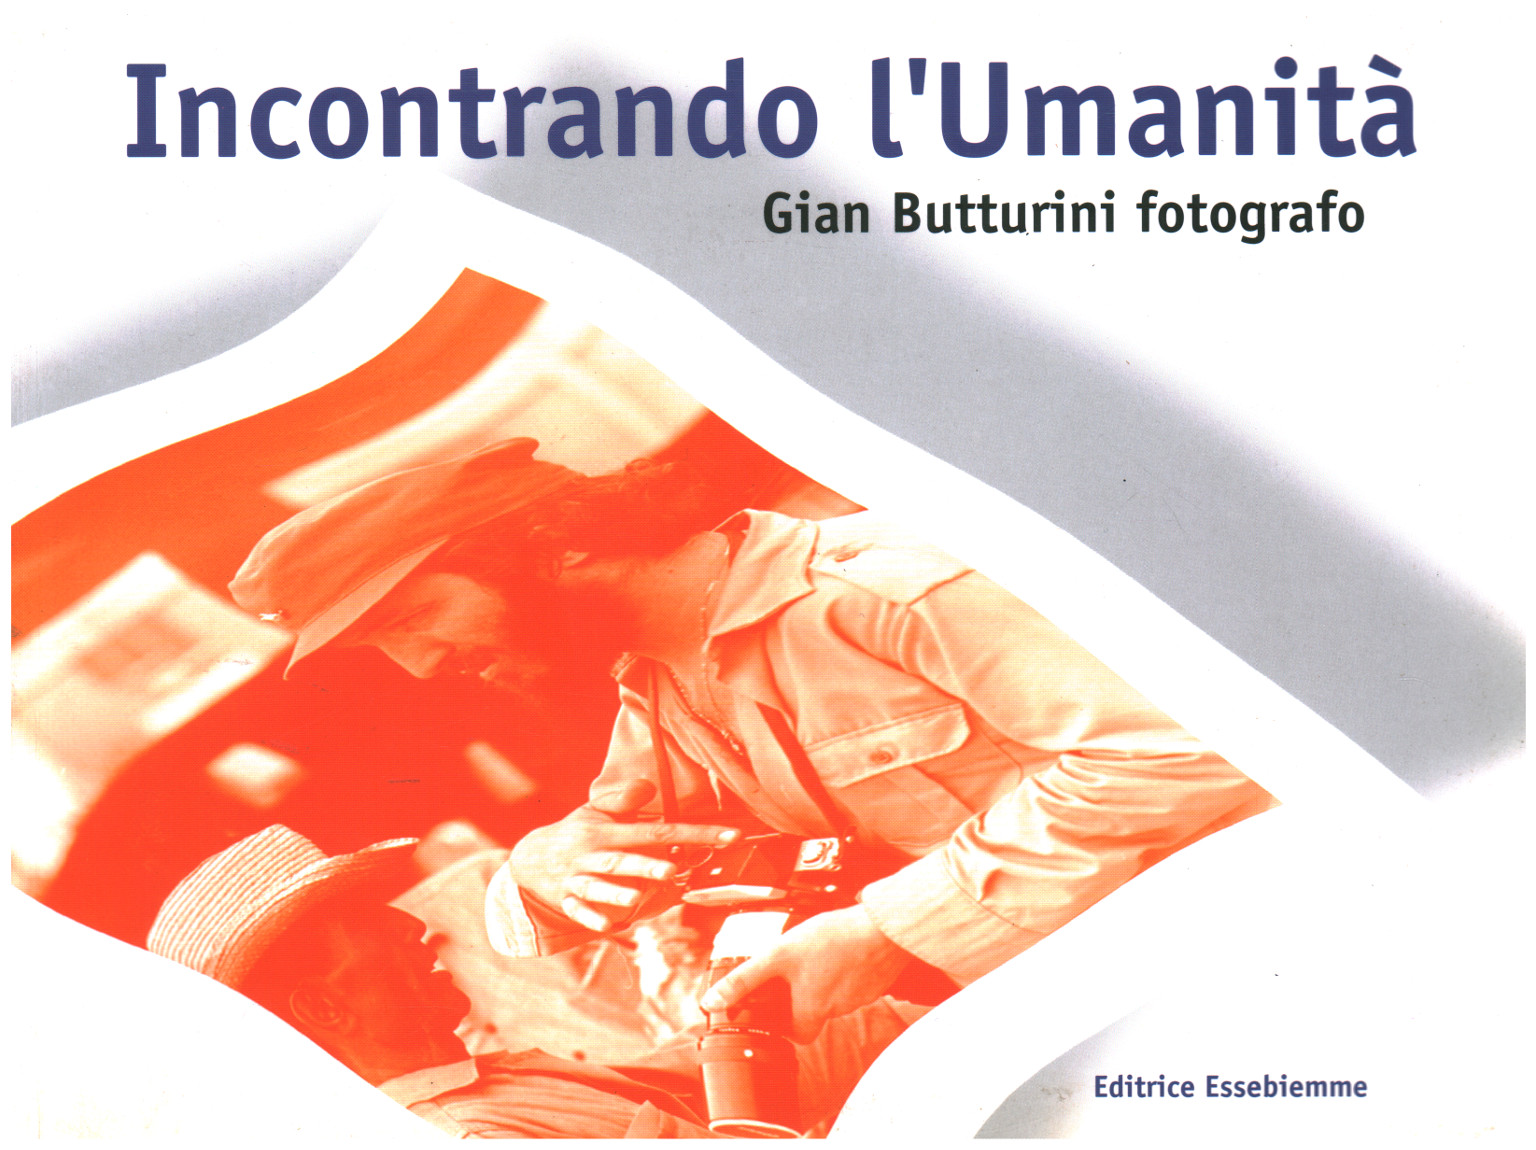 Encountering humankind, Gian Butturini